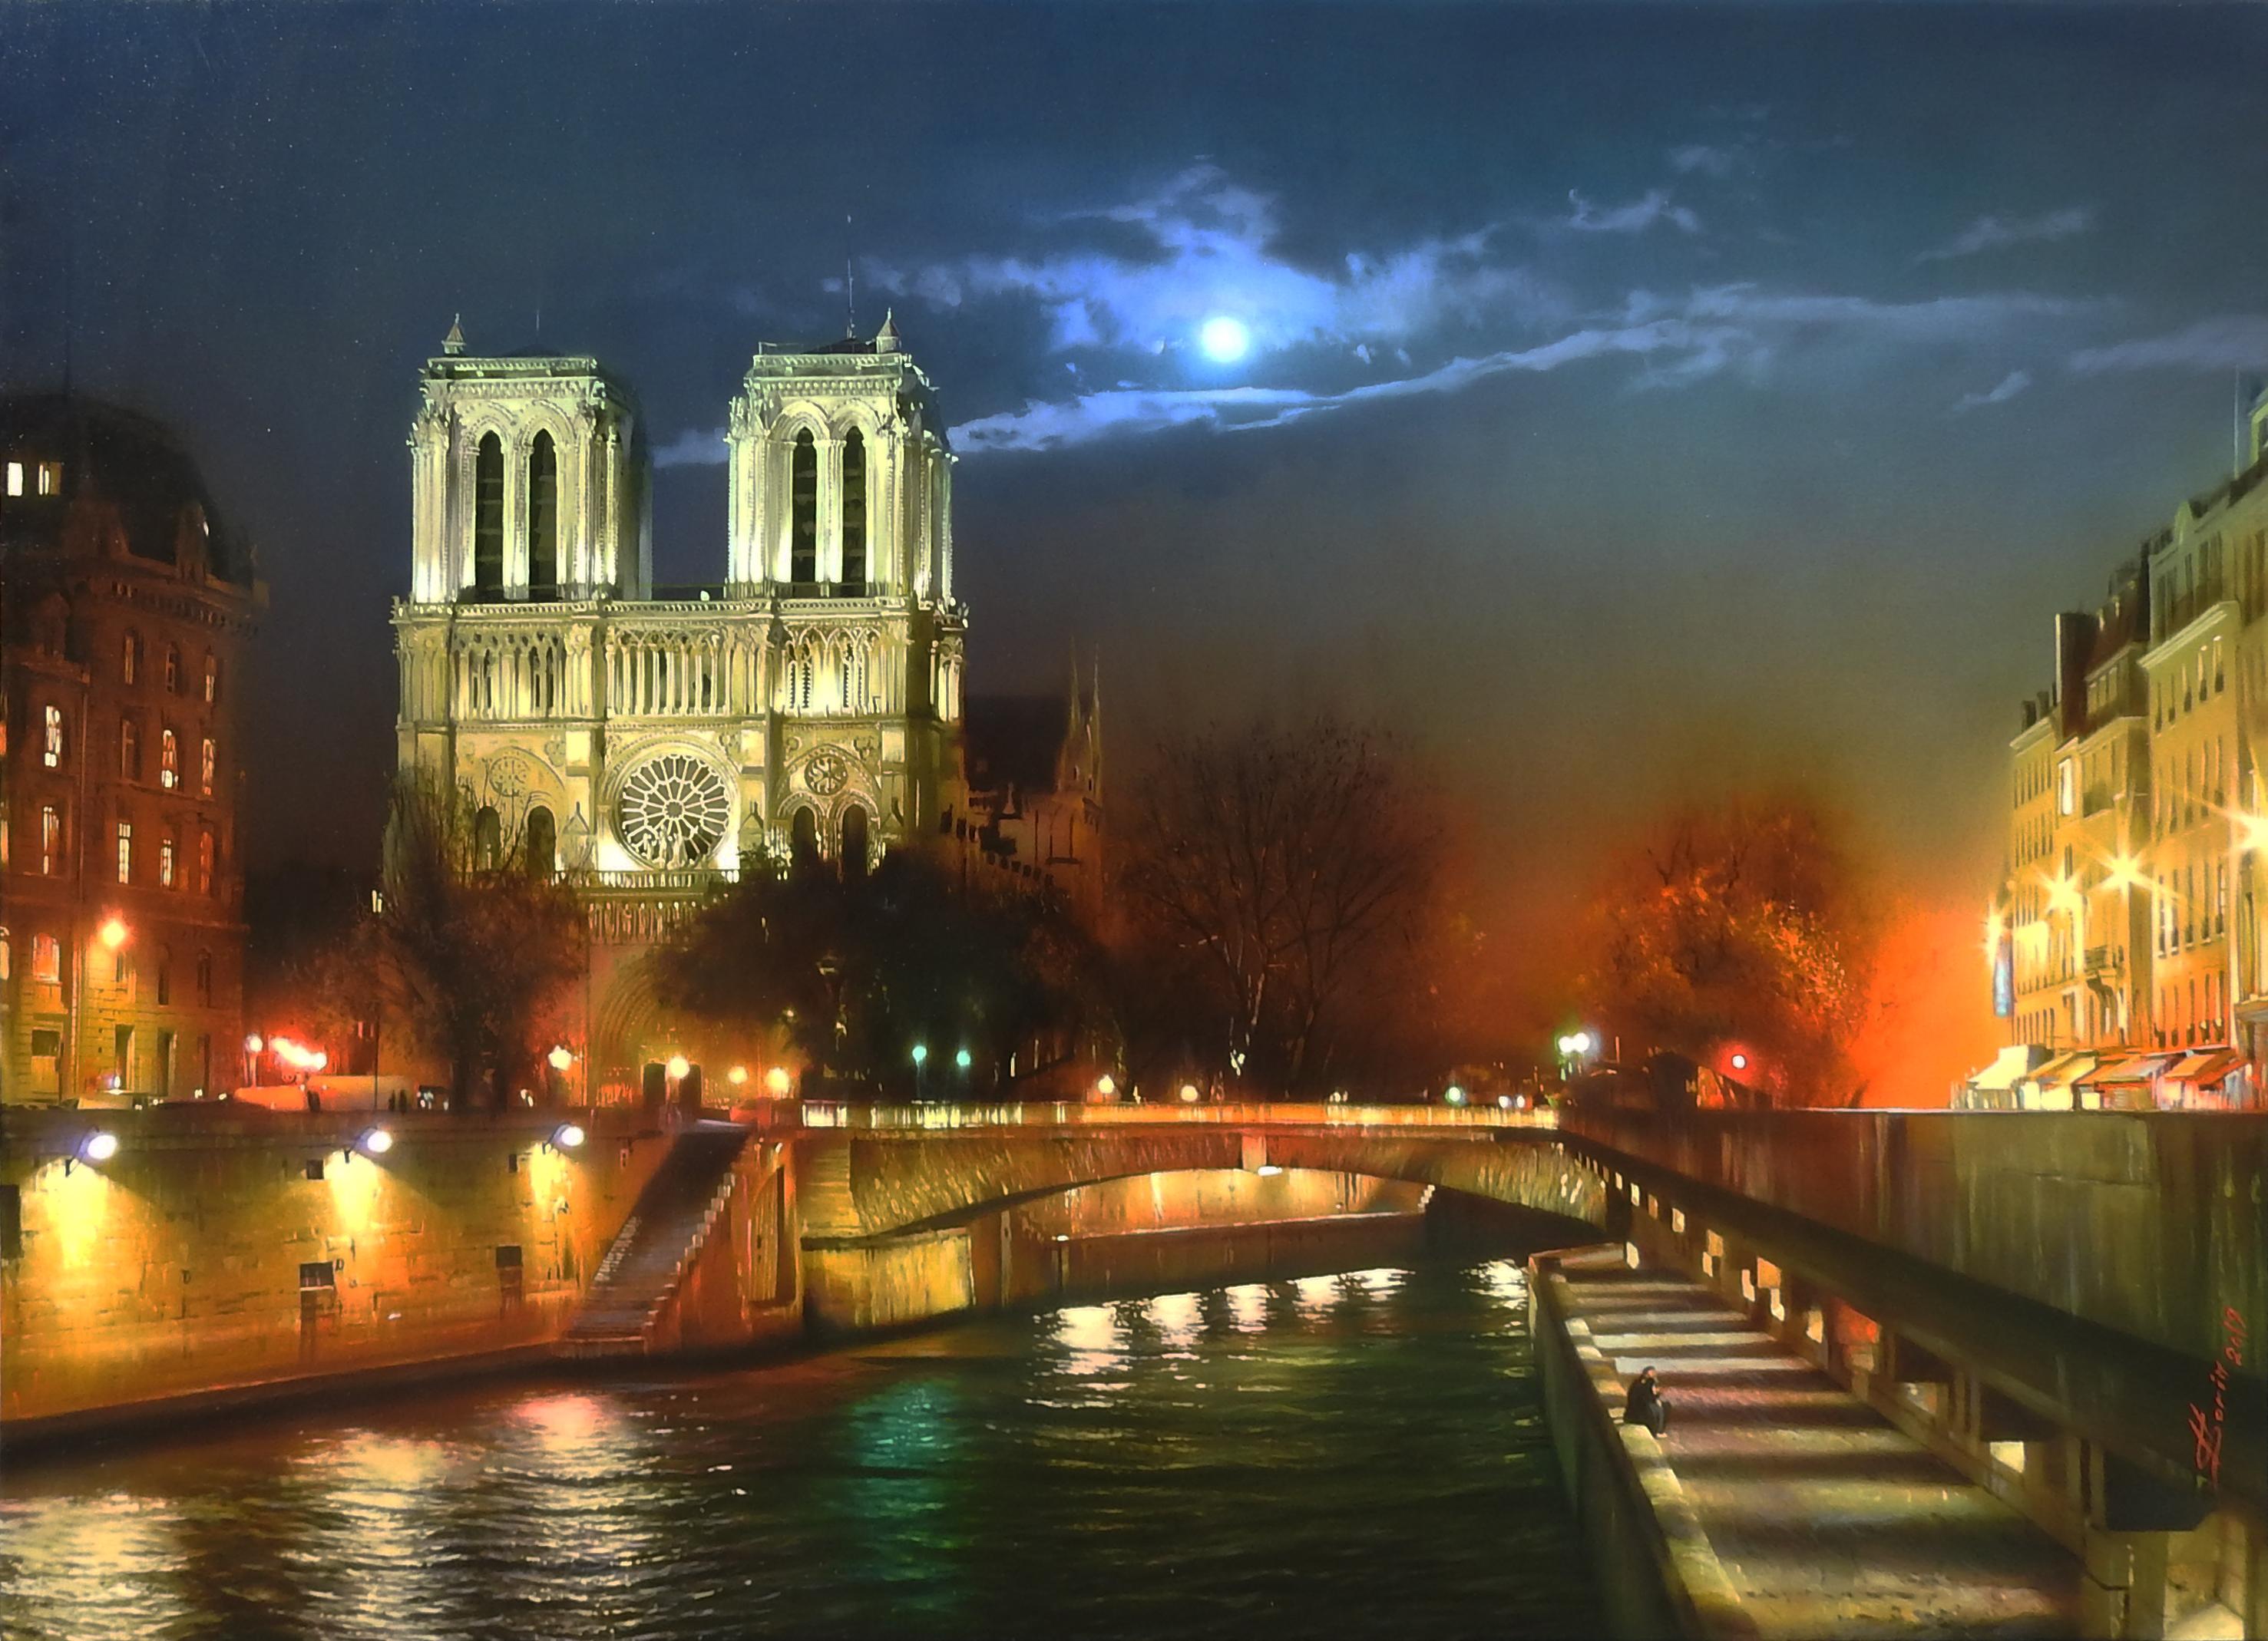 "Notre Dame de Paris bei Nacht" von Sorin ist ein 30x40 Zoll großes Ölgemälde auf Leinwand. Das Gemälde zeigt eine fotorealistische Nachtansicht der mittelalterlichen katholischen Kathedrale auf der Île de la Cité im 4. Arrondissement von Paris. Die